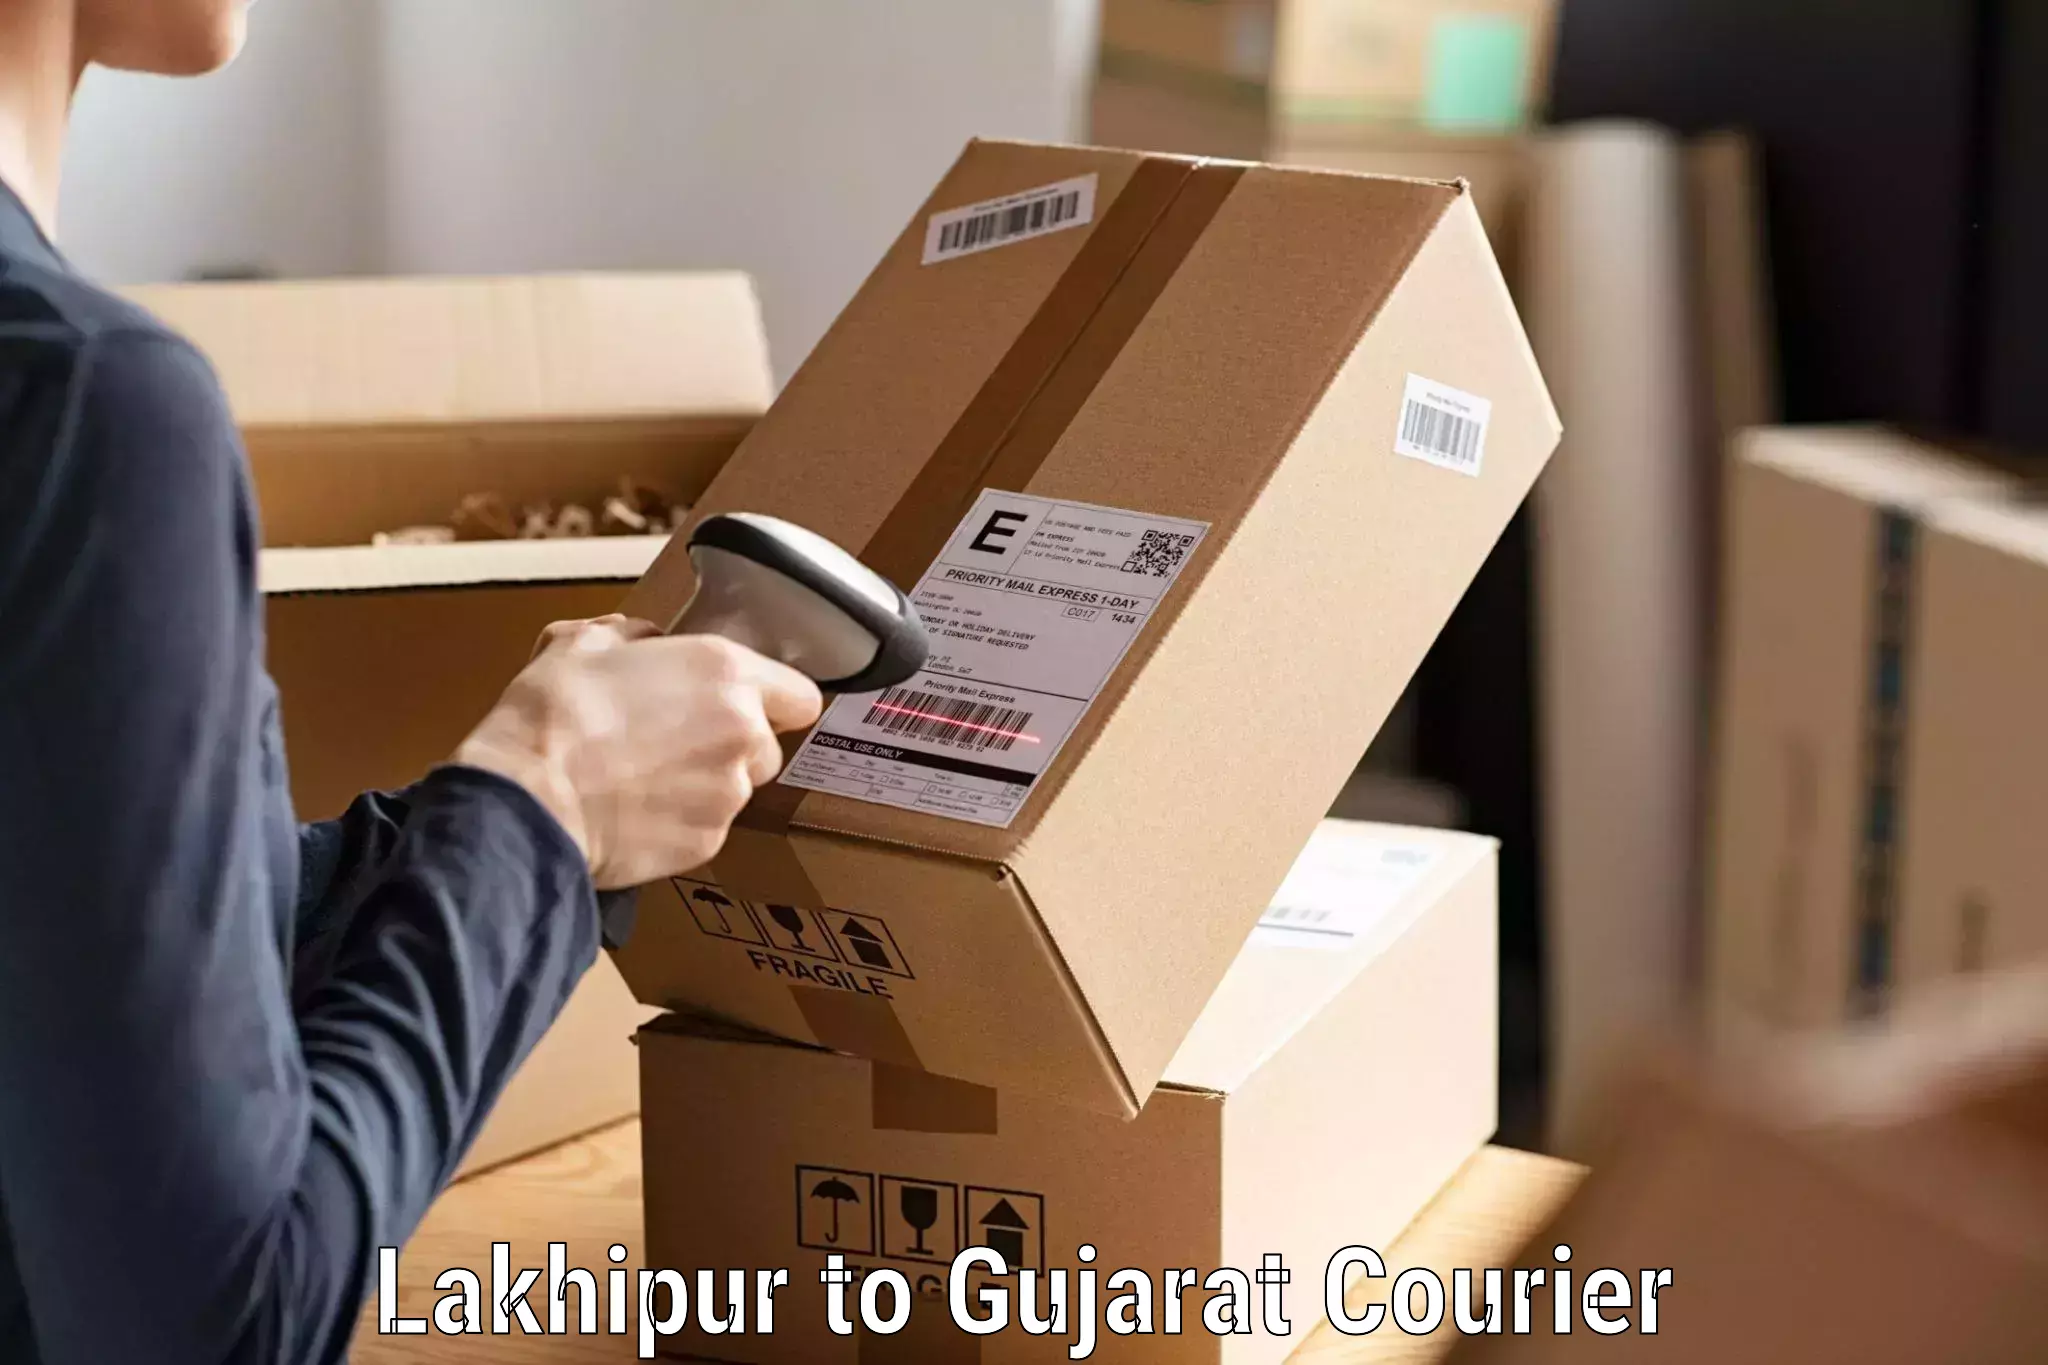 Doorstep delivery service Lakhipur to Banaskantha